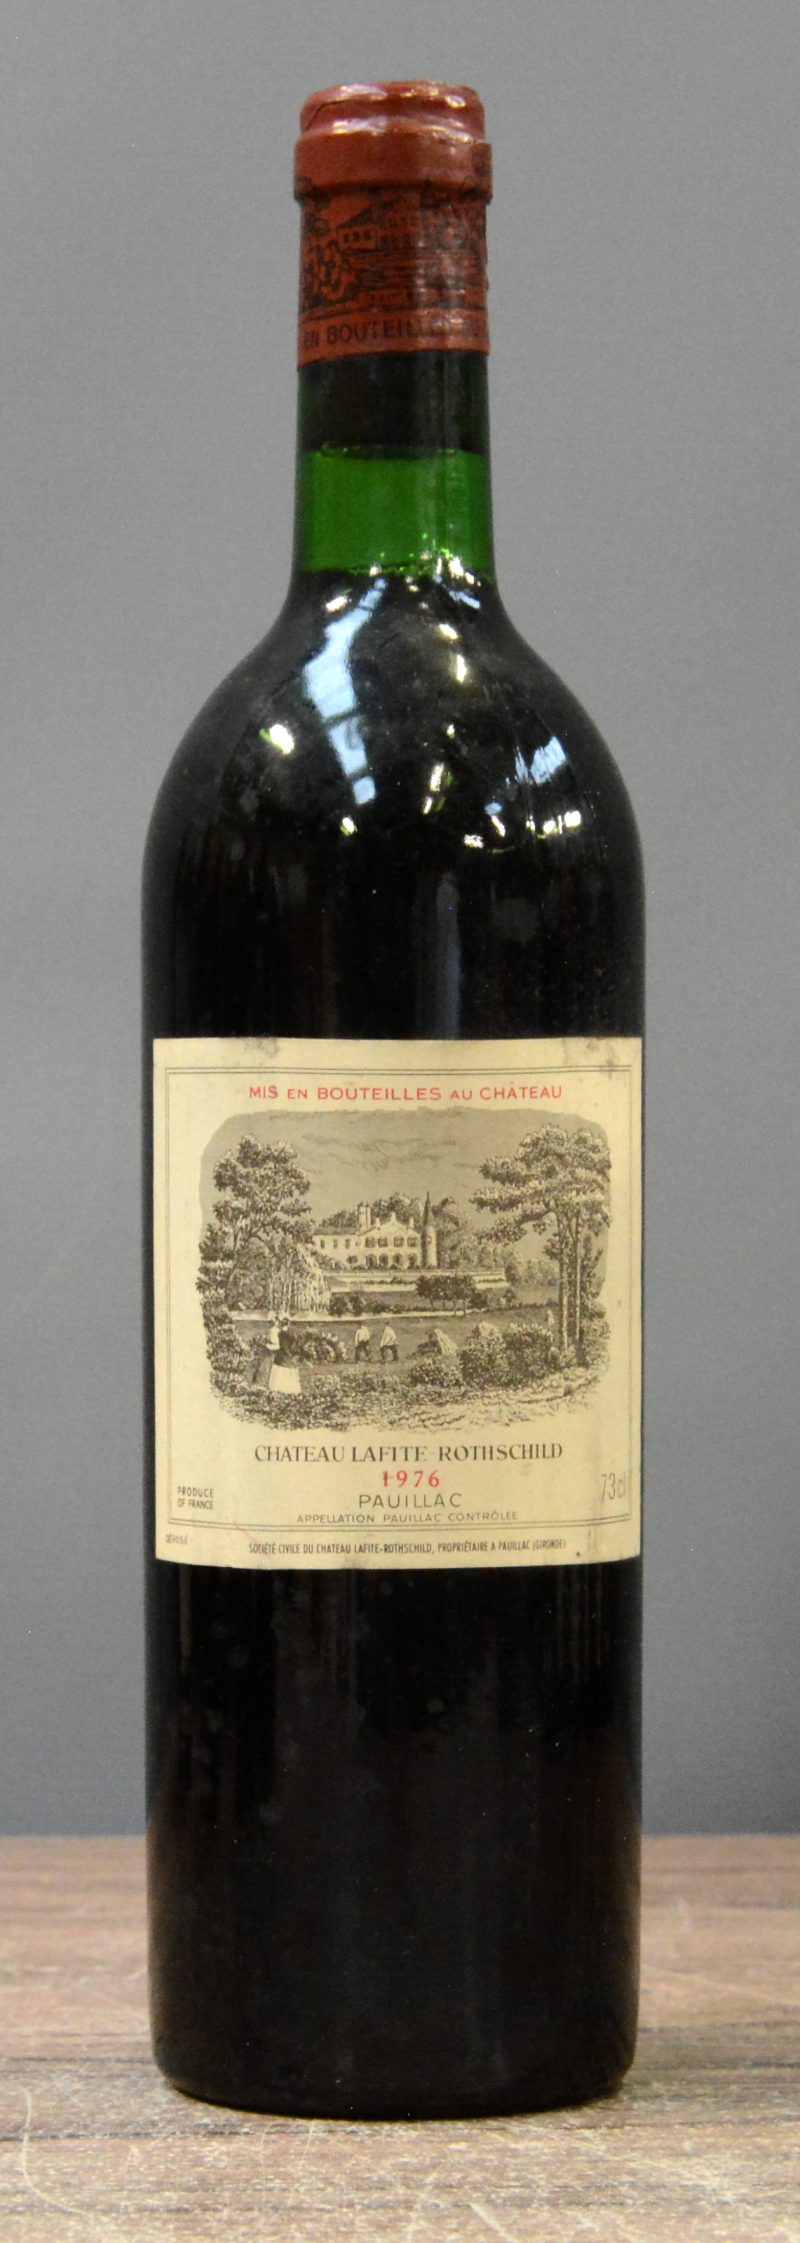 Ch. Lafite-Rotschild A.C. Pauillac 1er Grand Cru Classé  M.C.  1976  aantal: 1 Bt. neck